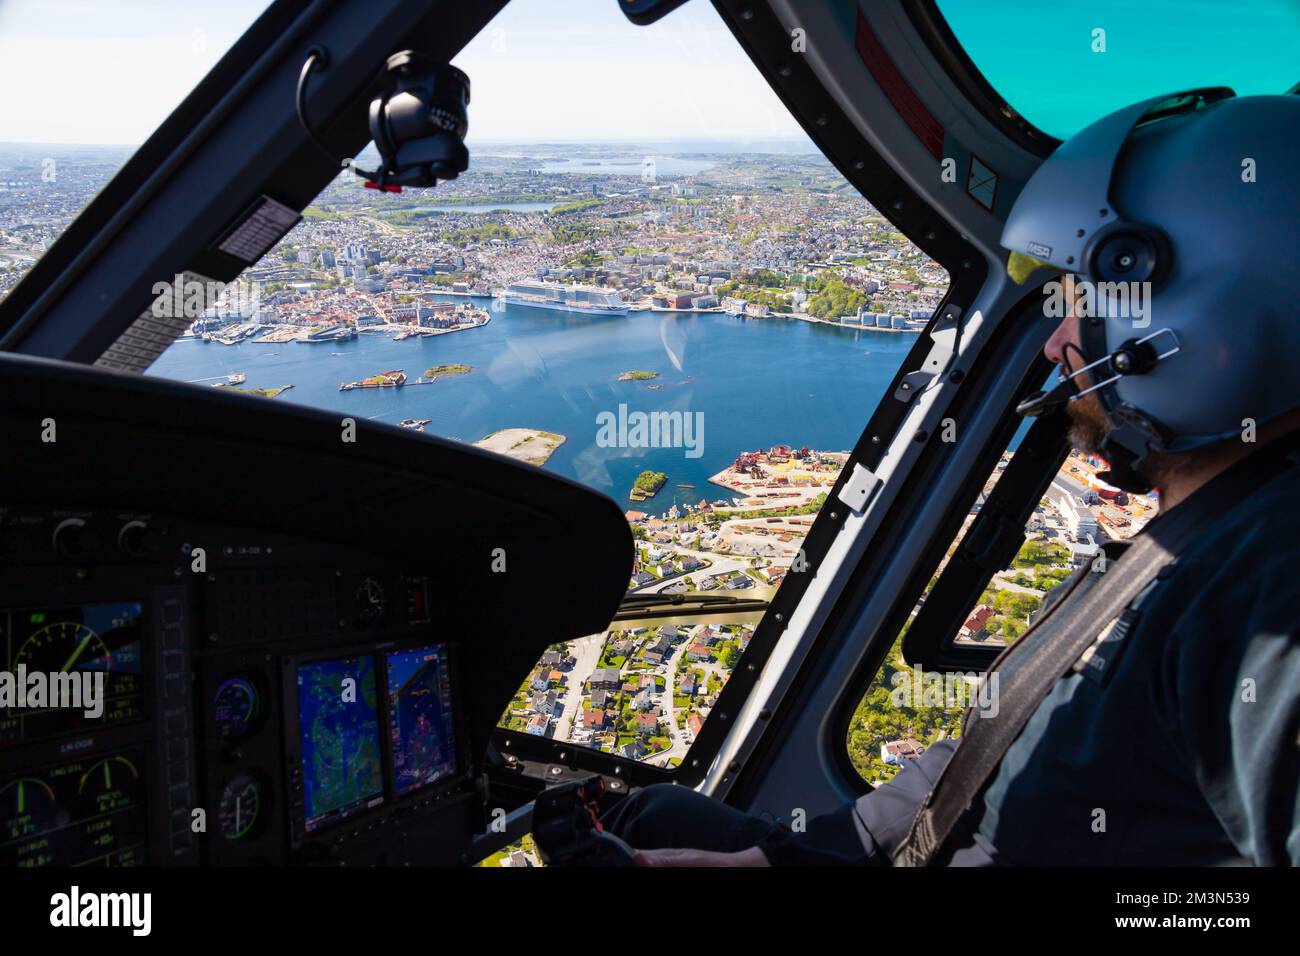 Vue de MS Iona berthed dans le port de Stavanger à partir de l'hélicoptère Airbus H125 avec pilote., Norvège Banque D'Images